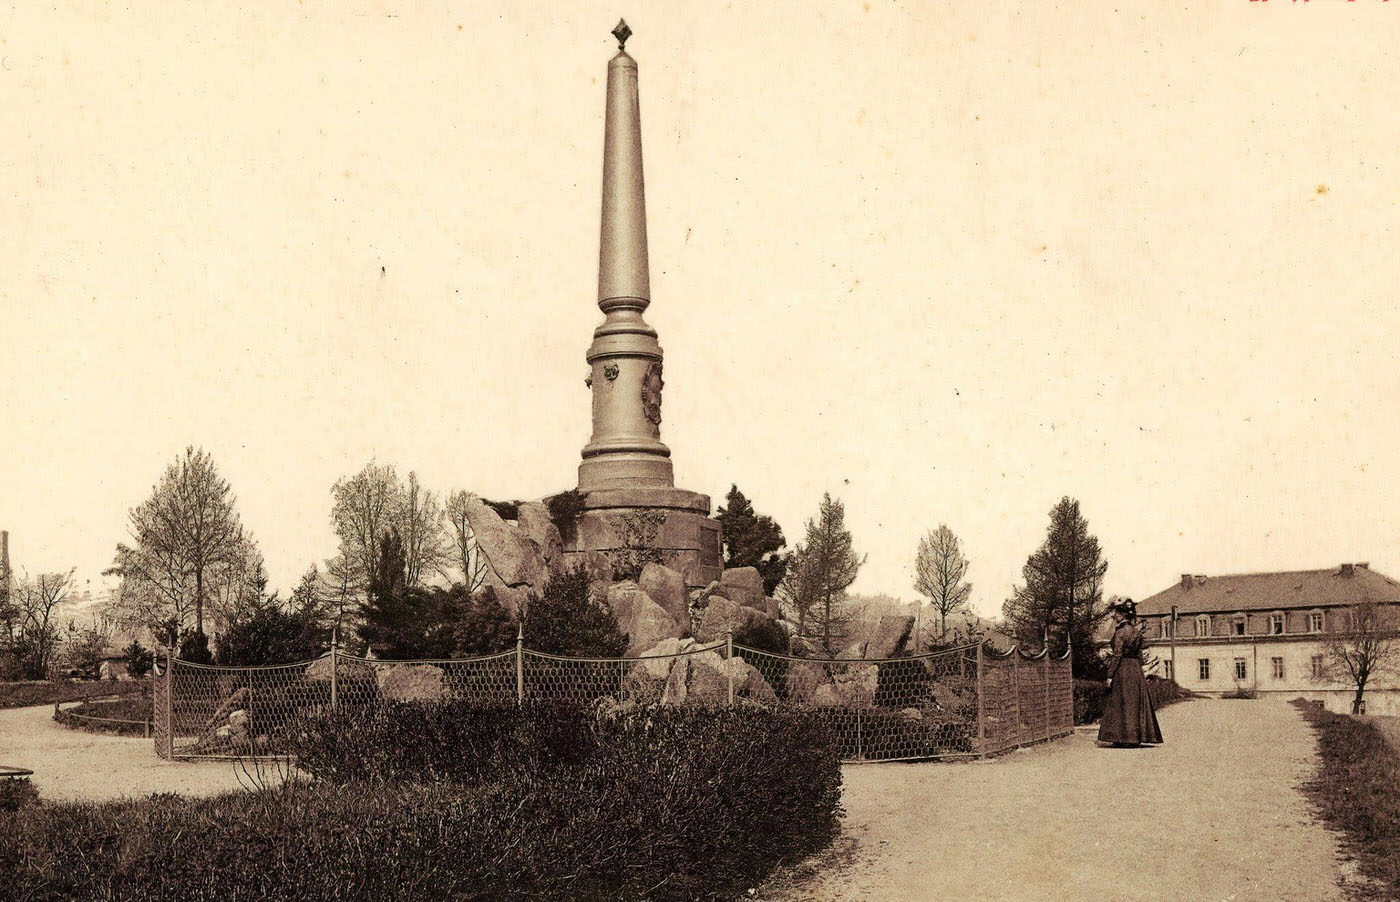 Monuments and memorials to Otto von Bismarck in Saxony, Meissen, Bismarksaule, Germany, 1901.